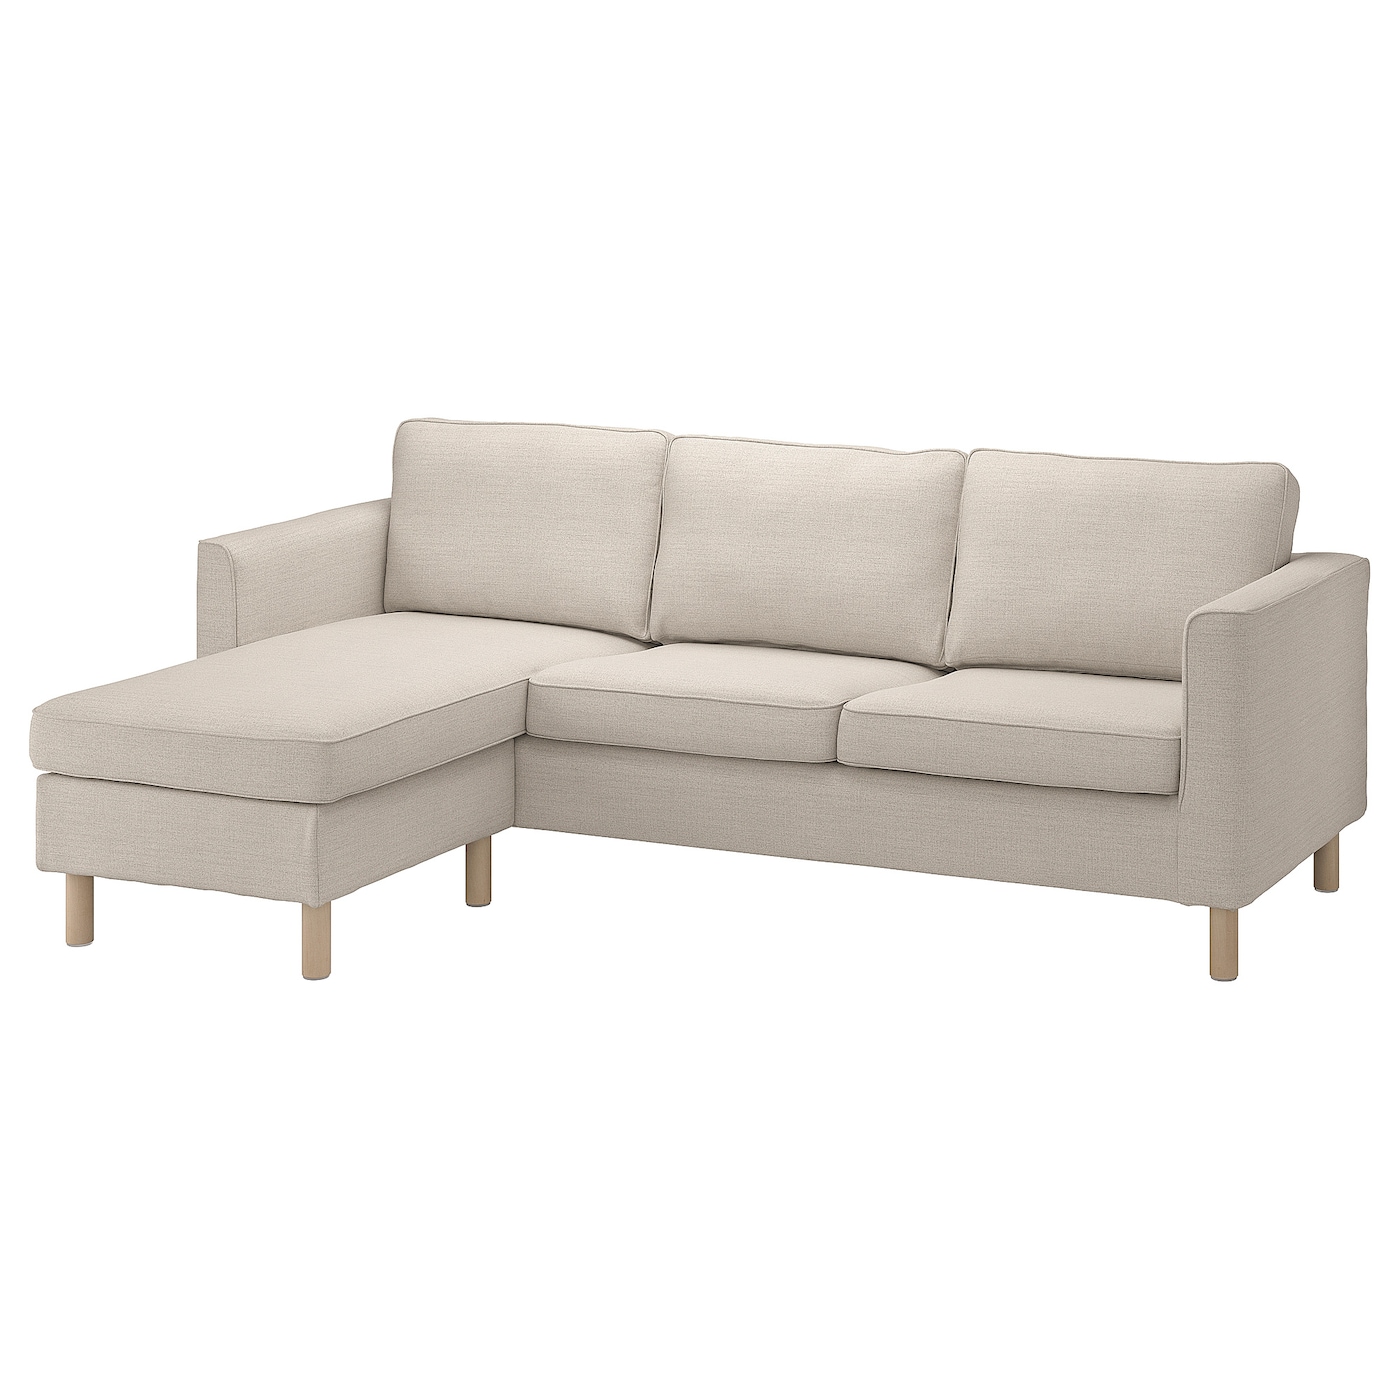 2-местный диван и шезлонг - IKEA PÄRUP/PARUP, 86x148x235см, серый/светло-серый, ПЭРУП ИКЕА